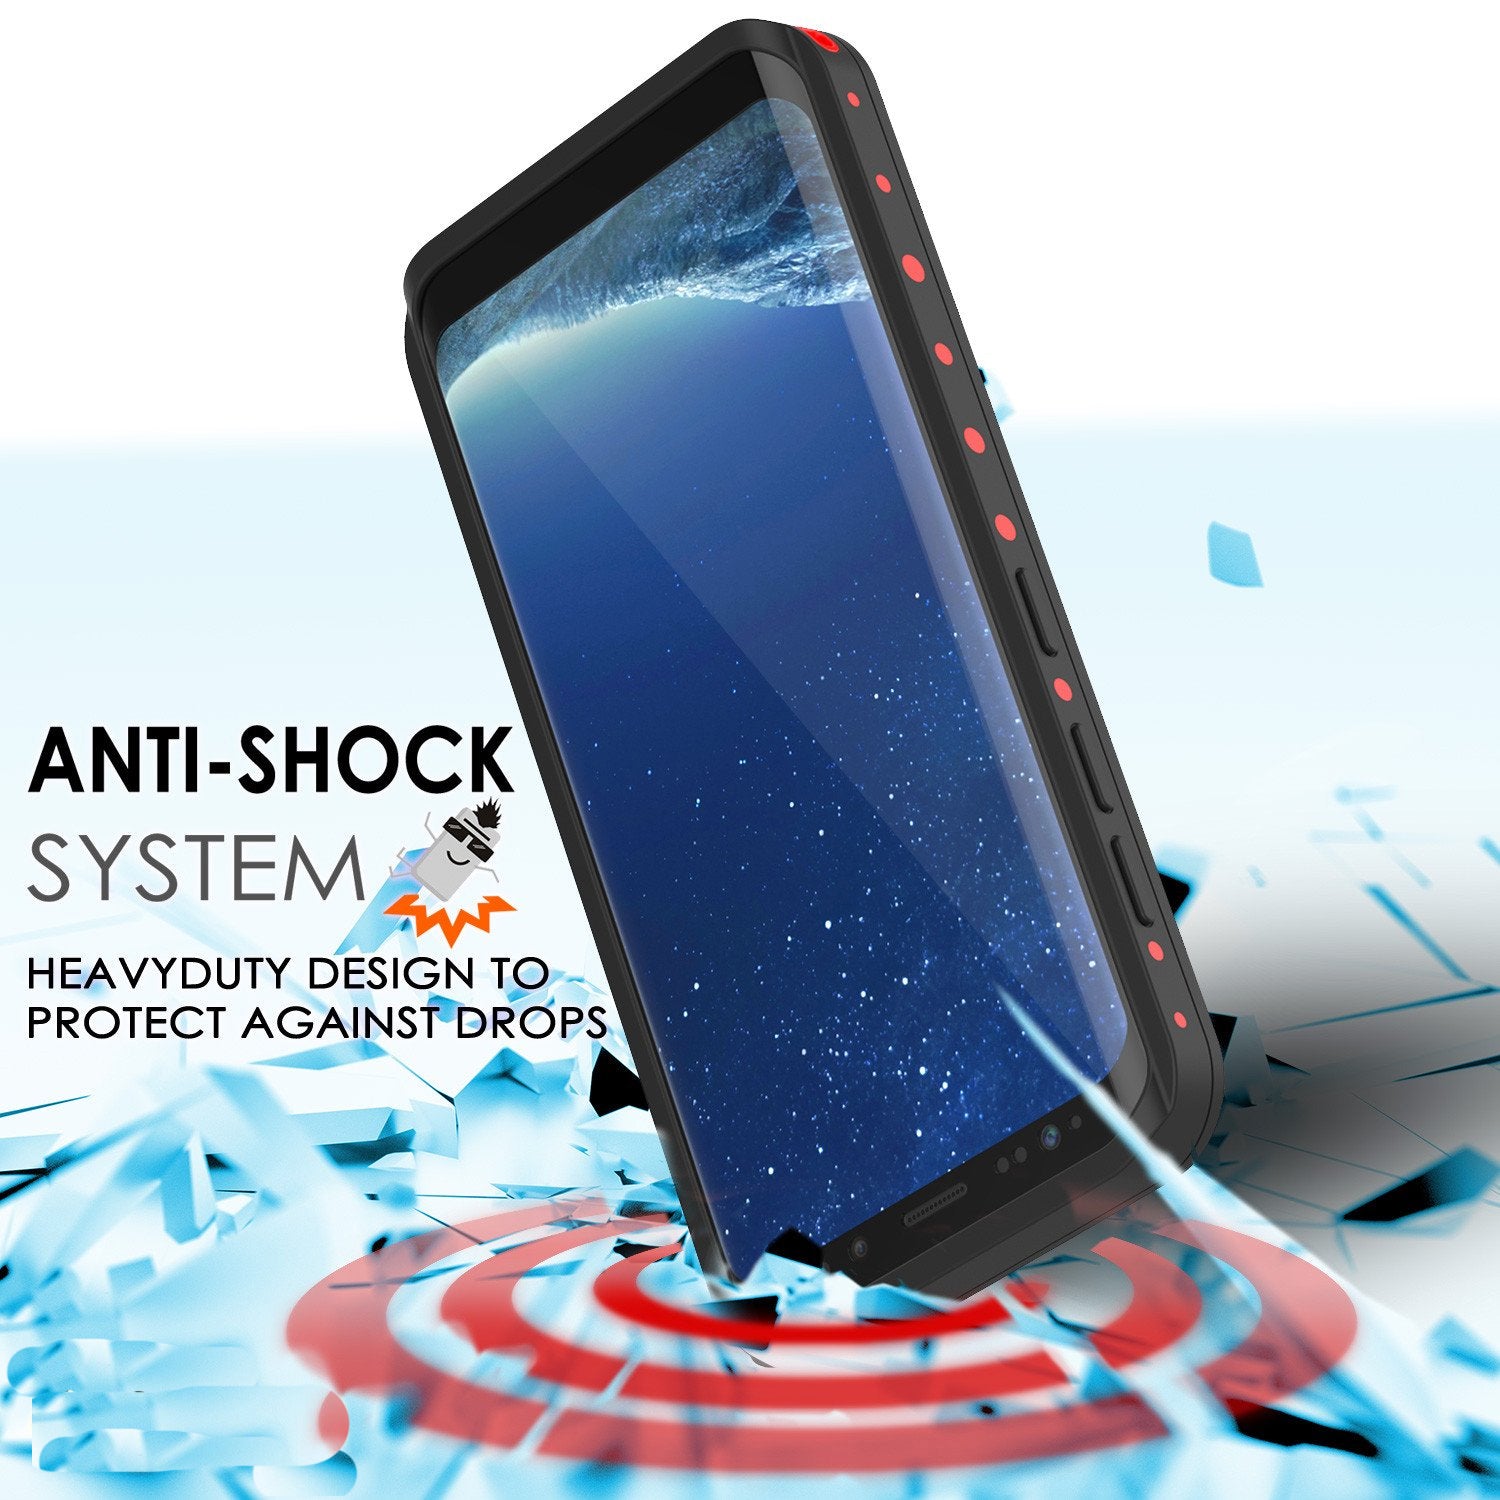 Galaxy S8 waterproof Case, Punkcase [StudStar Series] Slim Fit, RED